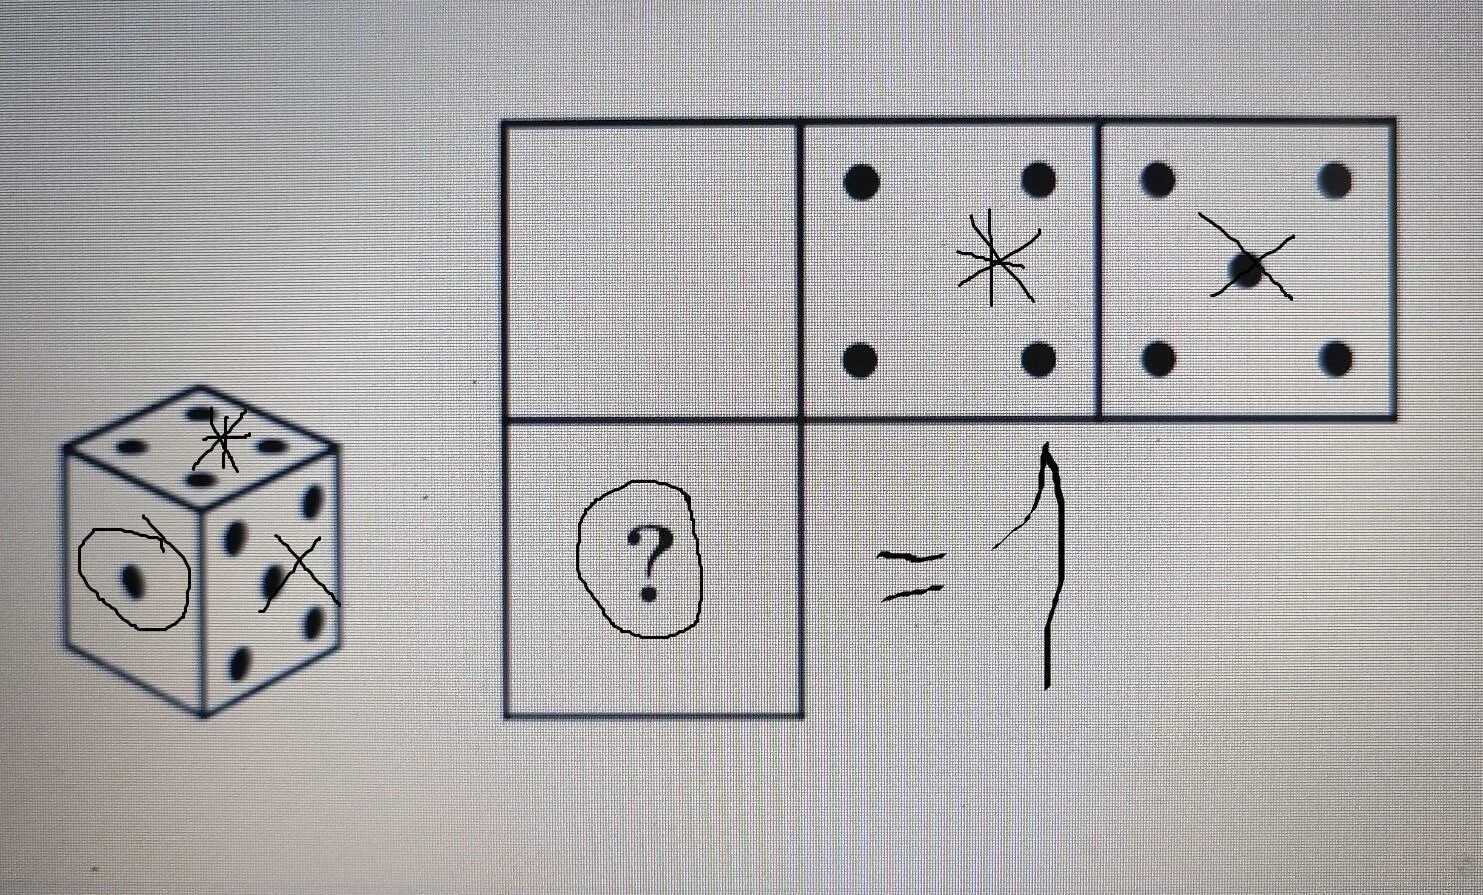 Кубик с 4 точками. Расположение точек на игральном кубике. Грани кубика с точками. Картина из игральных кубиков. Игральный кубик развертка.